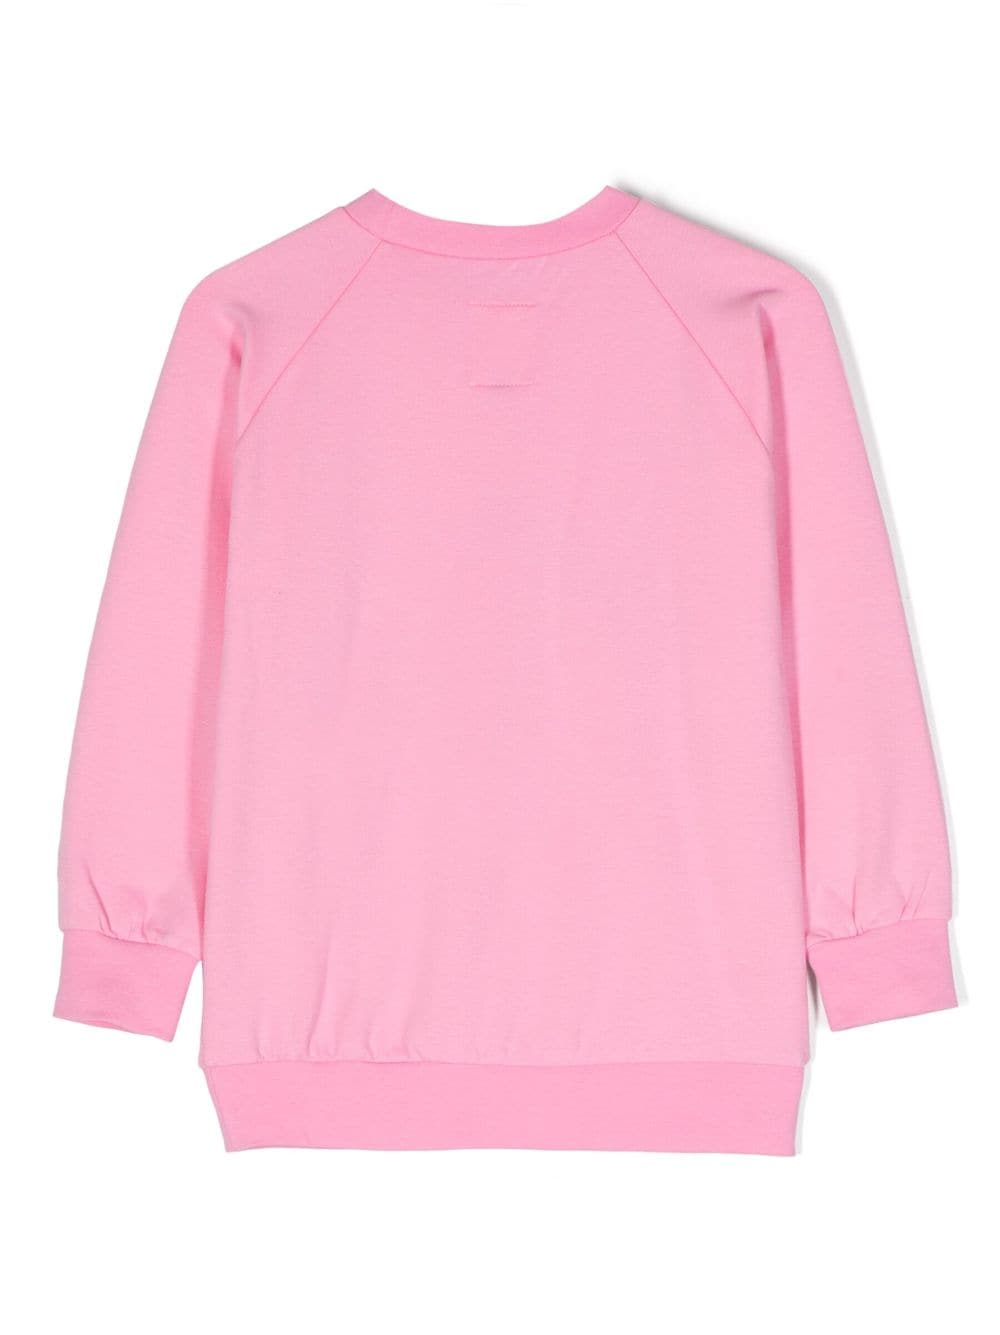 WAUW CAPOW by BANGBANG Sweater van biologisch katoen - Roze